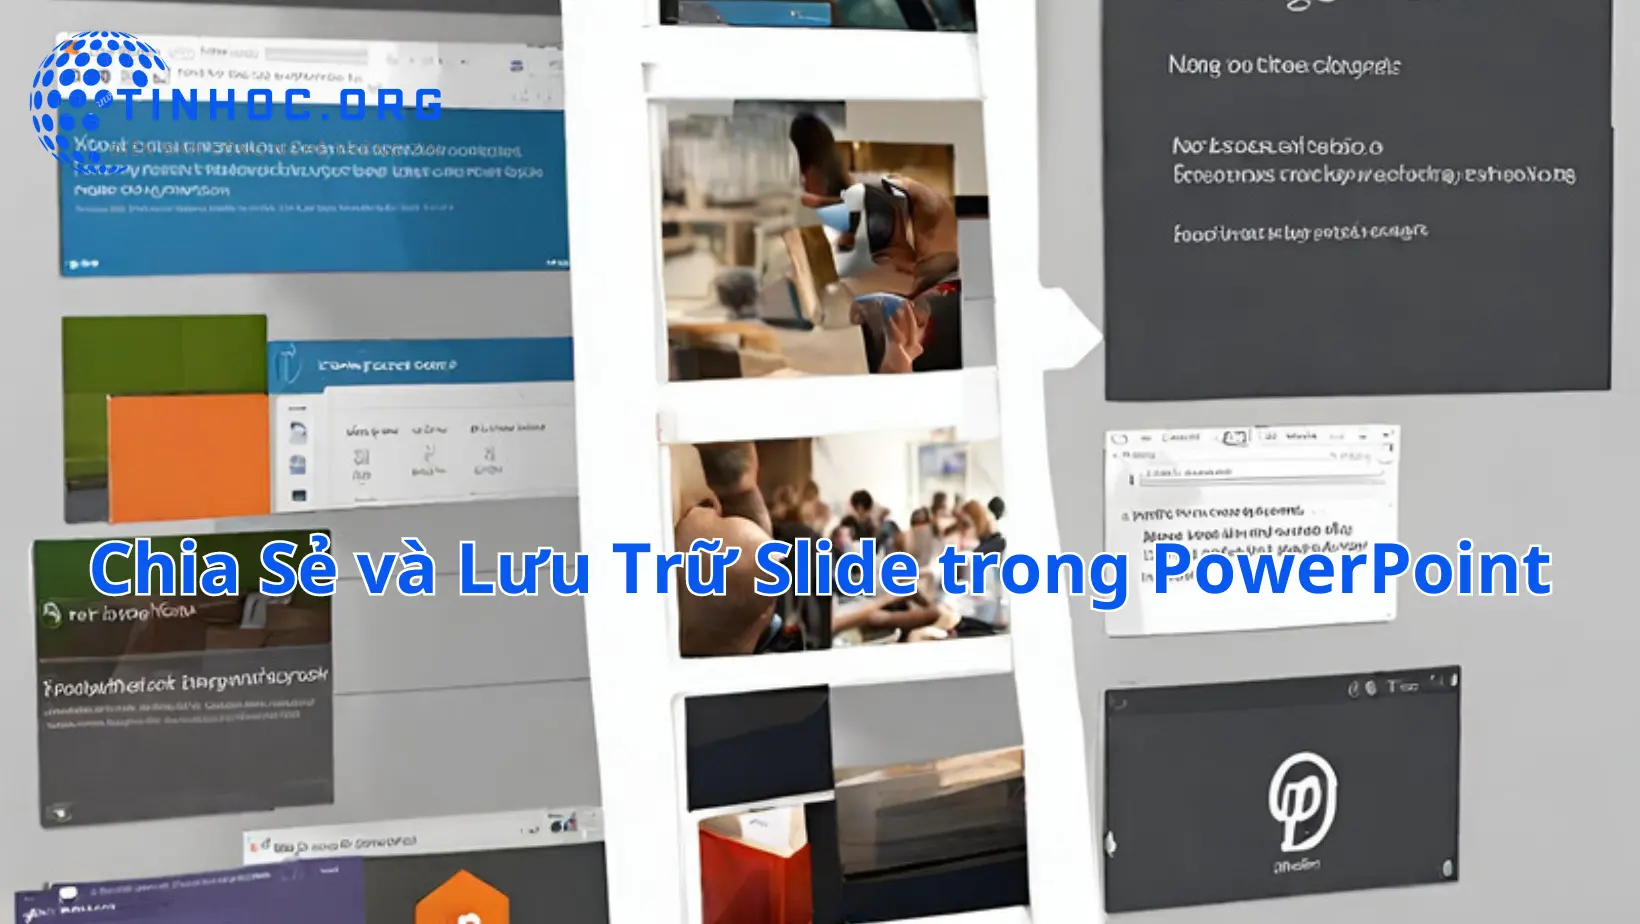 Chia Sẻ và Lưu Trữ Slide trong PowerPoint